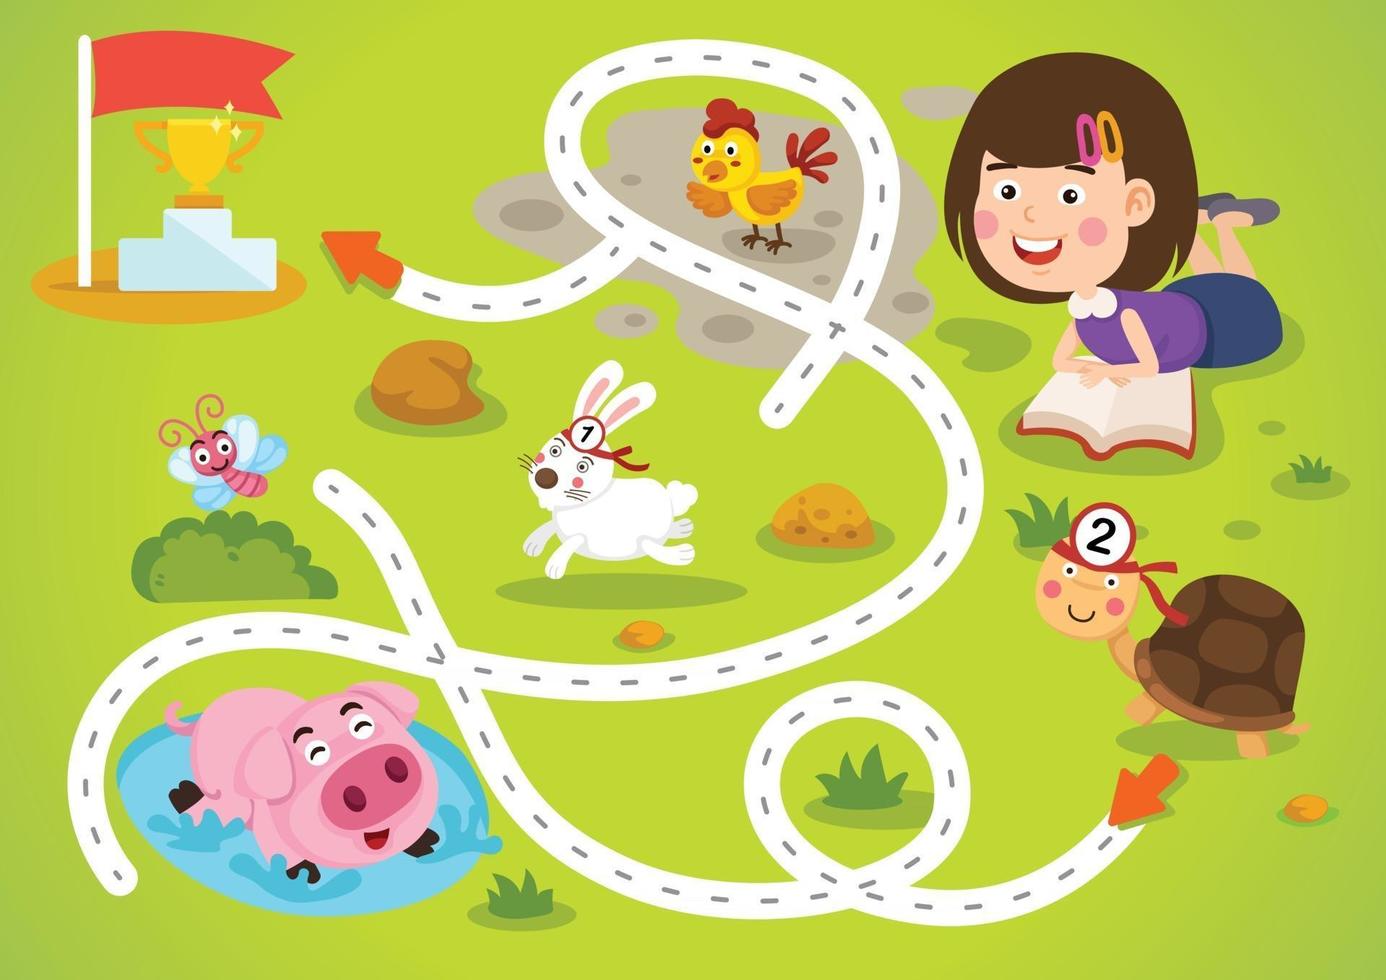 Educational maze game for children illustration vector